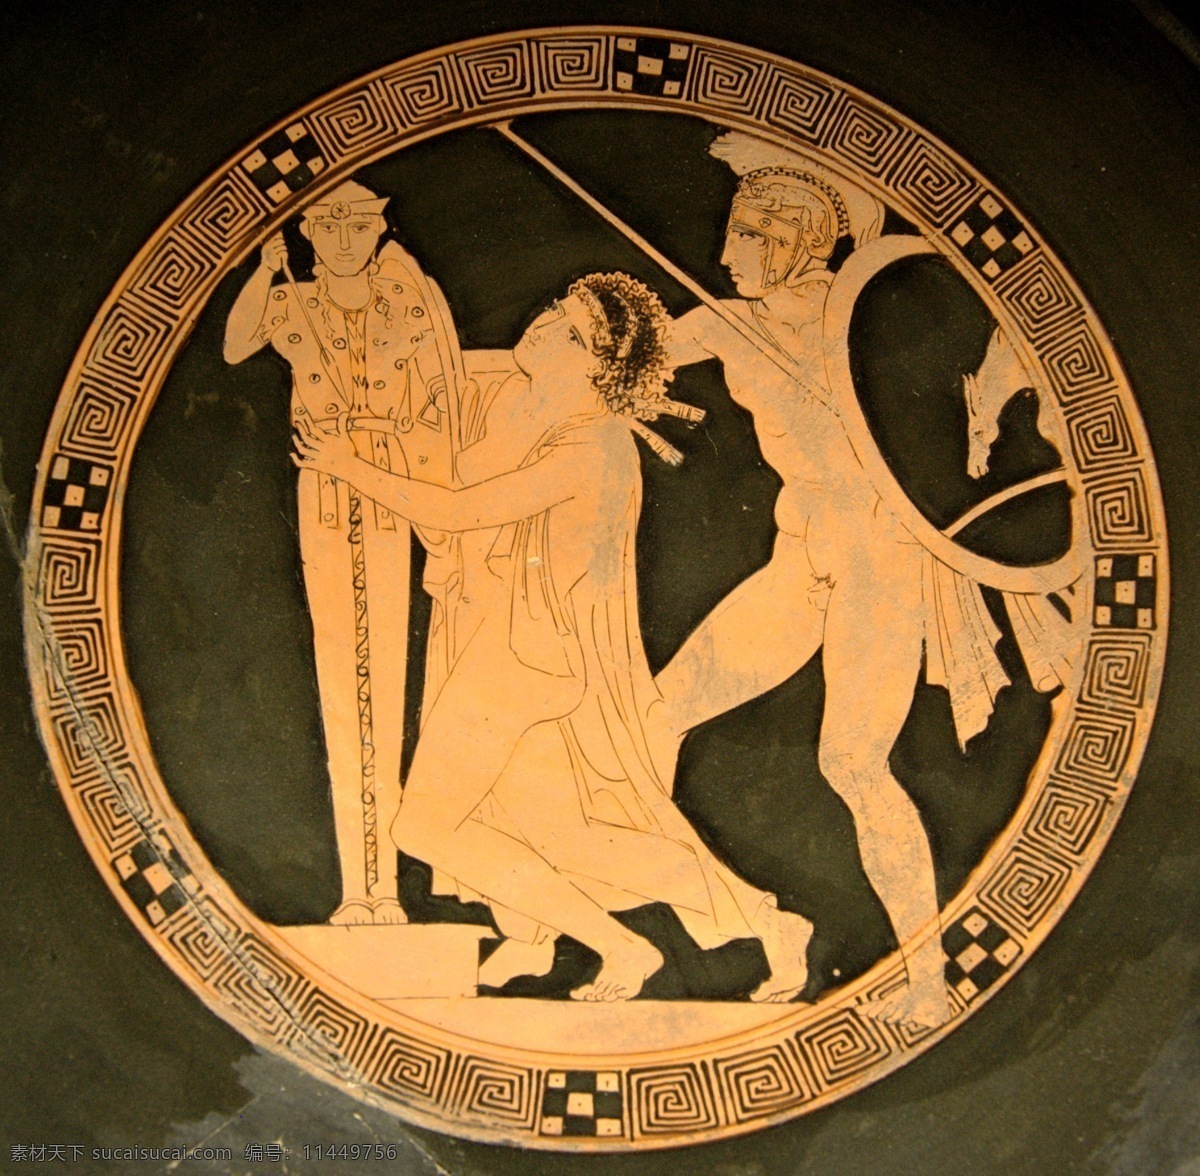 卡 珊德拉 被俘 古代 古典 绘画 卢浮宫 女人 文物 希腊 艺术 古希腊 装饰素材